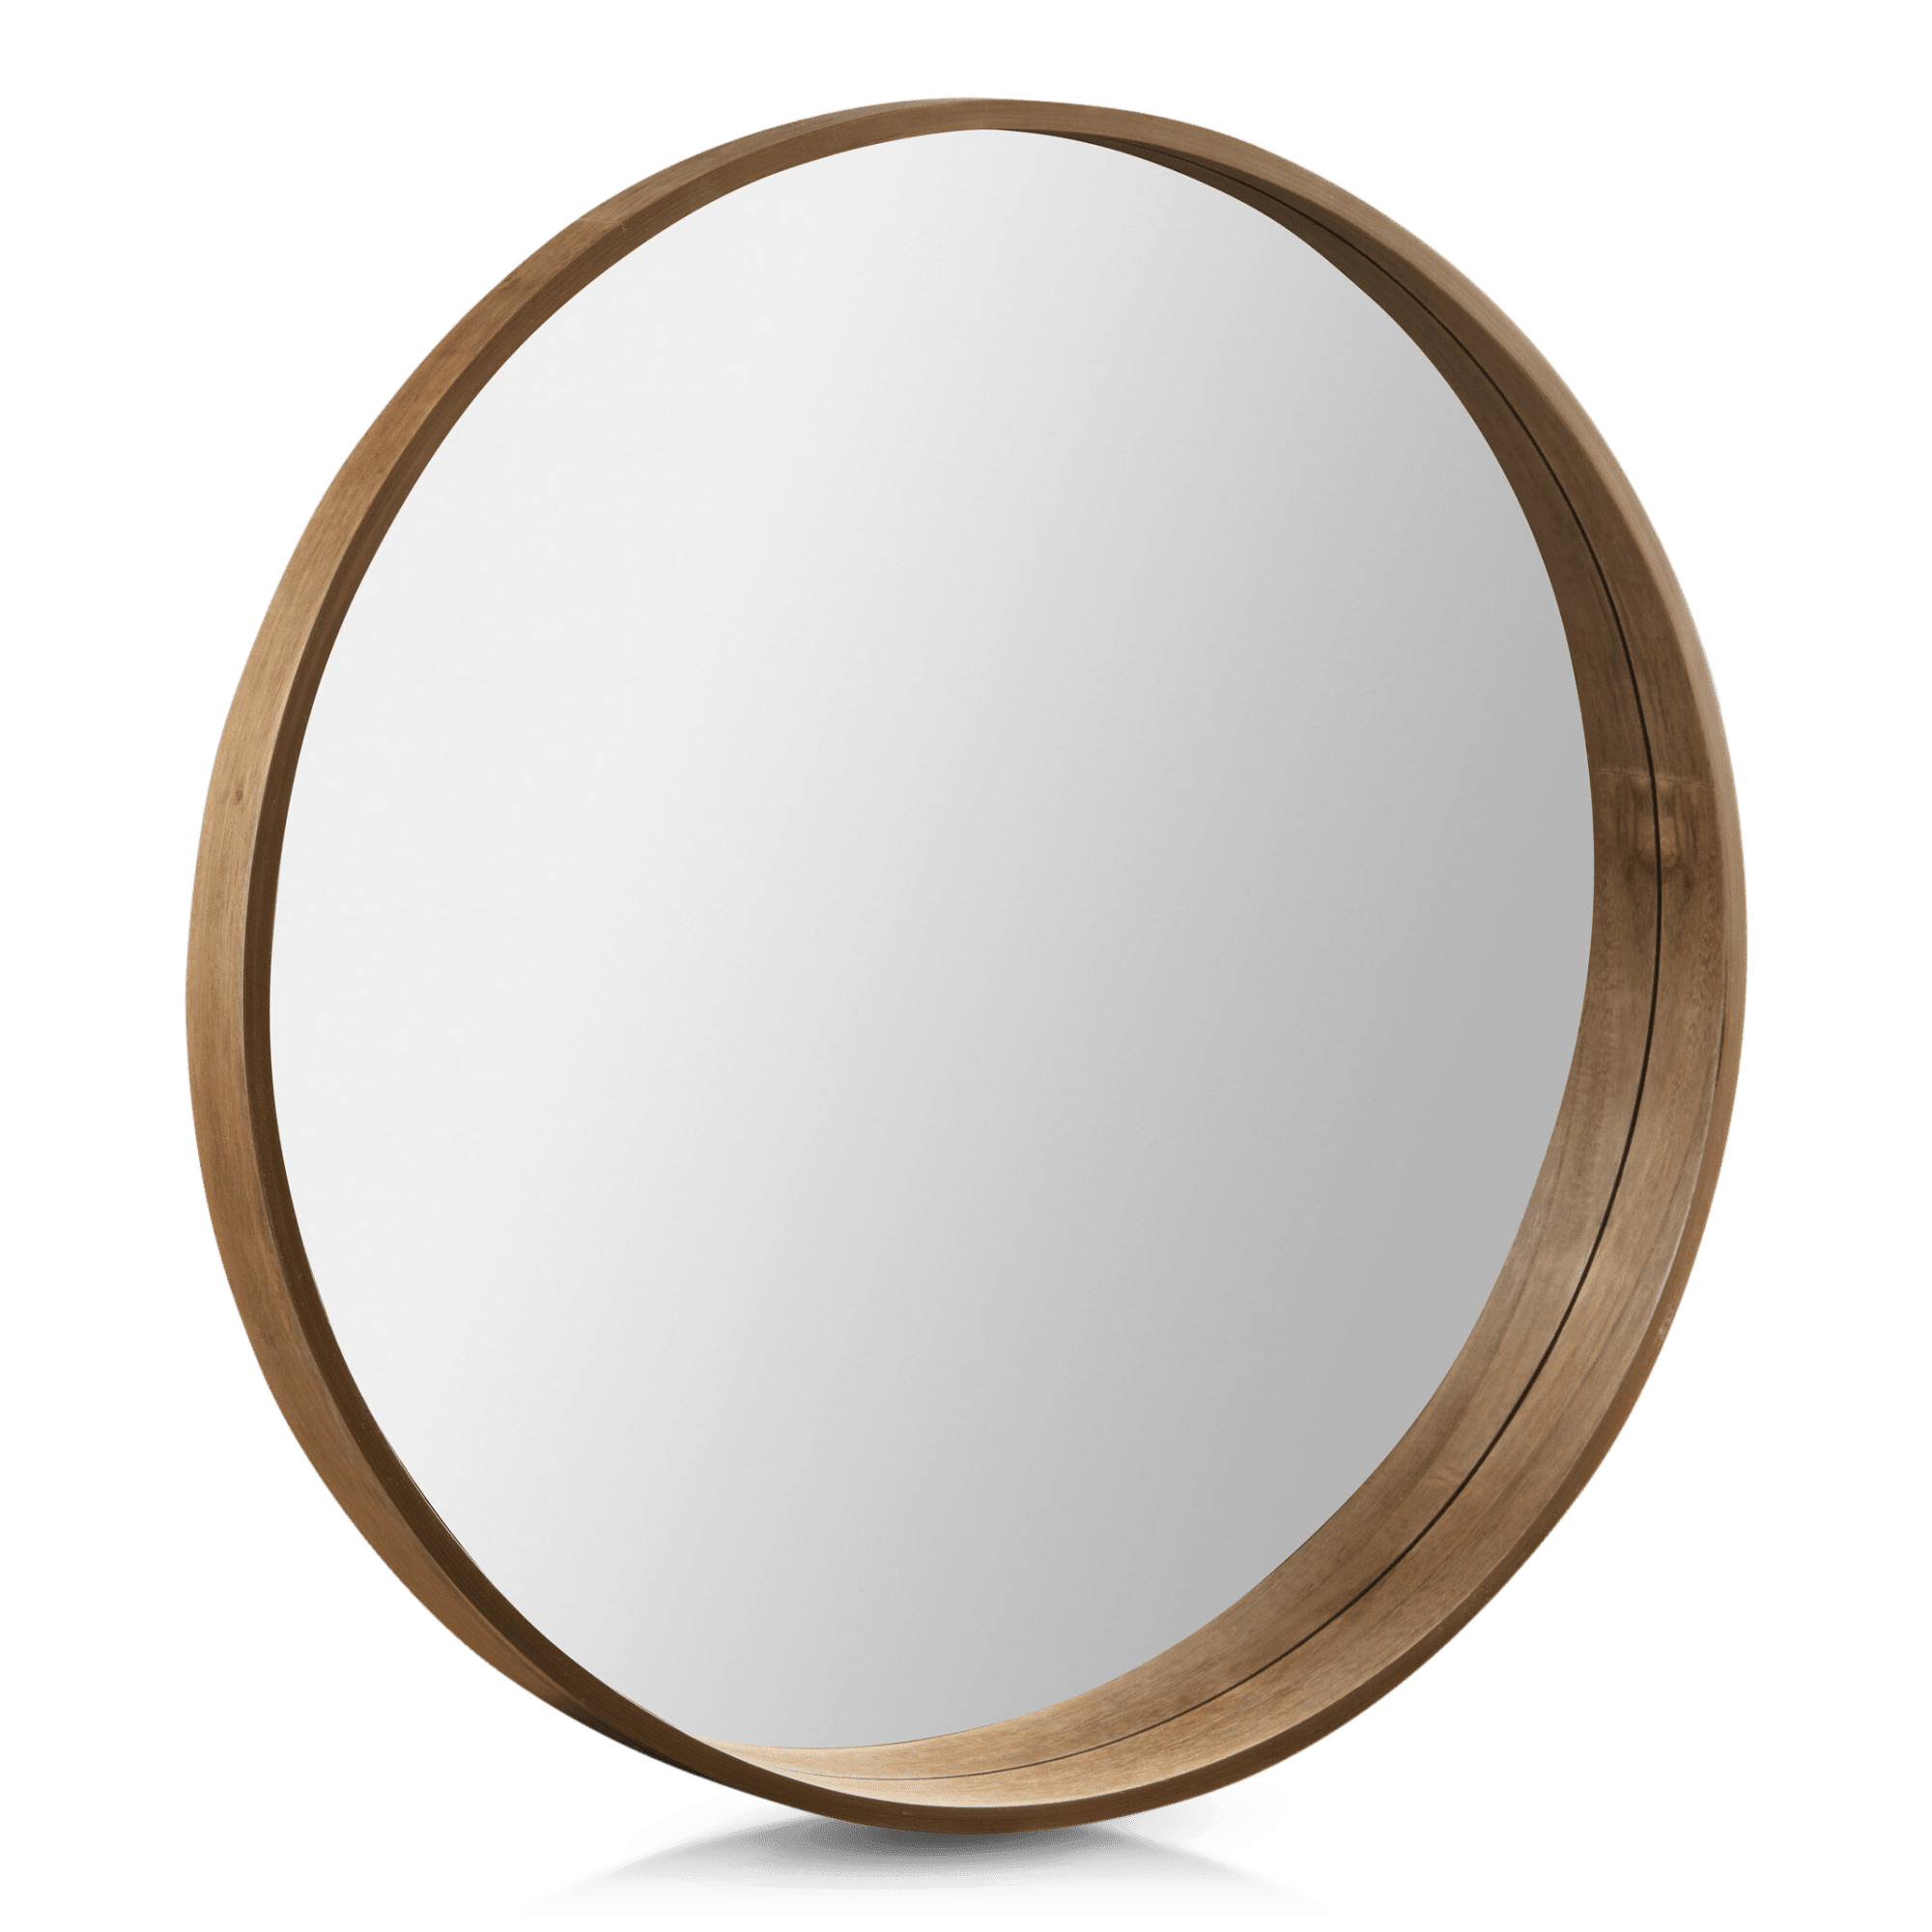 Round Framed Mirror